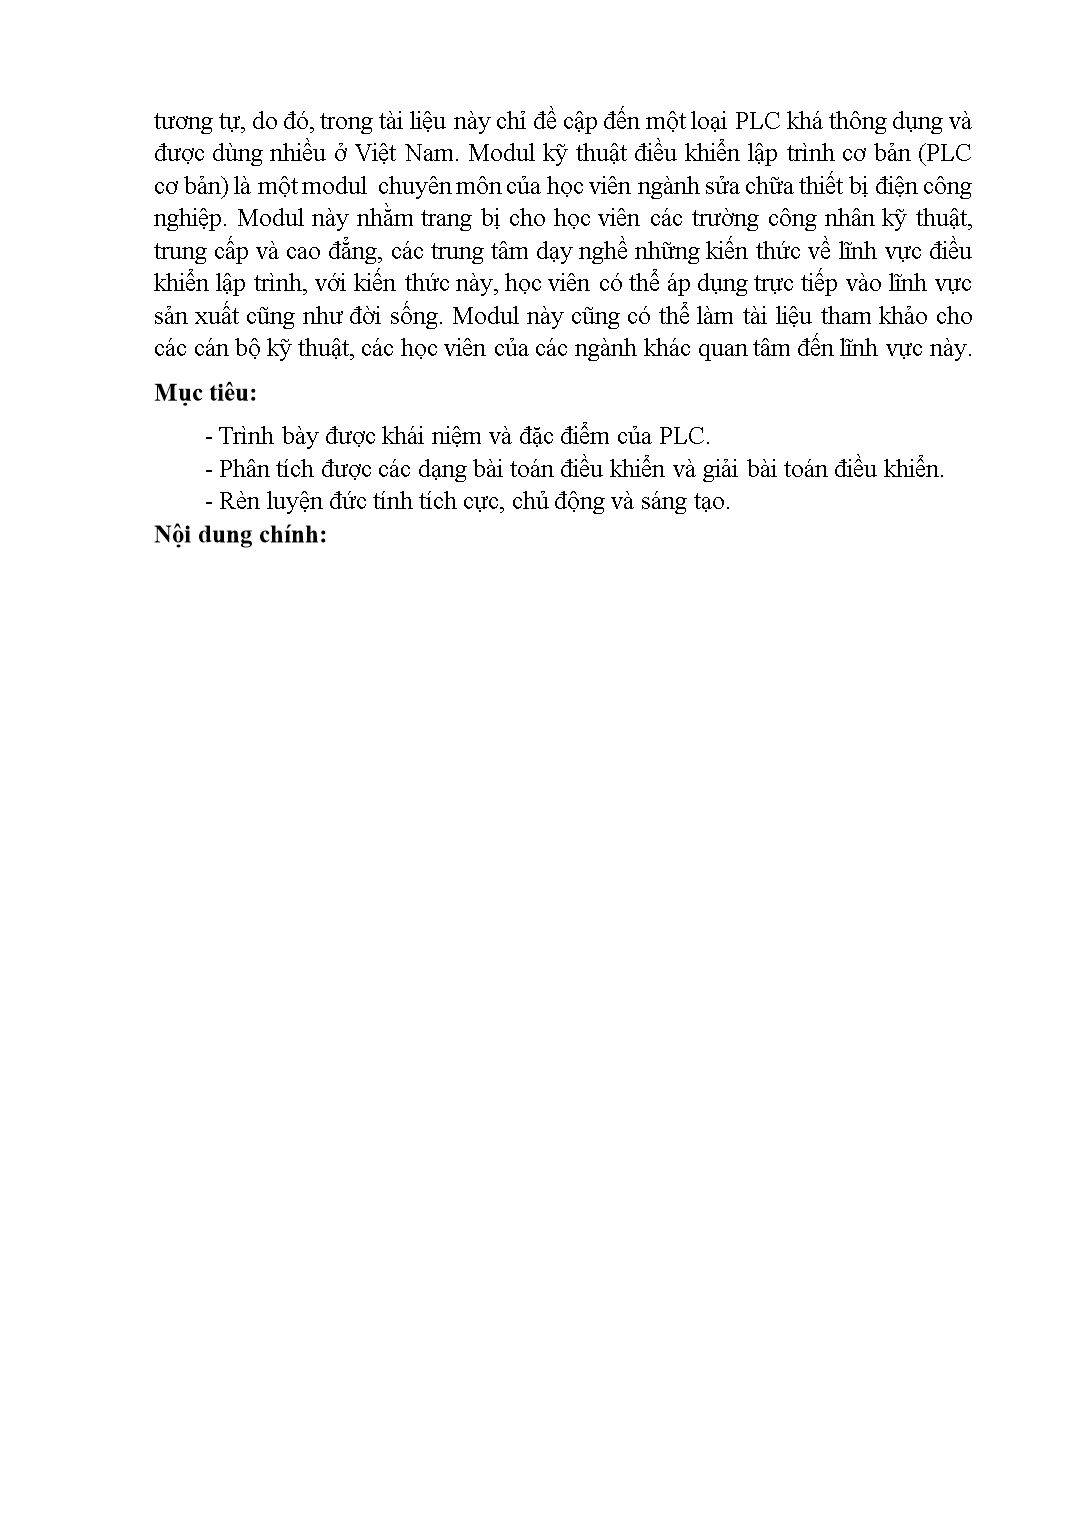 Giáo trình PLC cơ bản trang 5